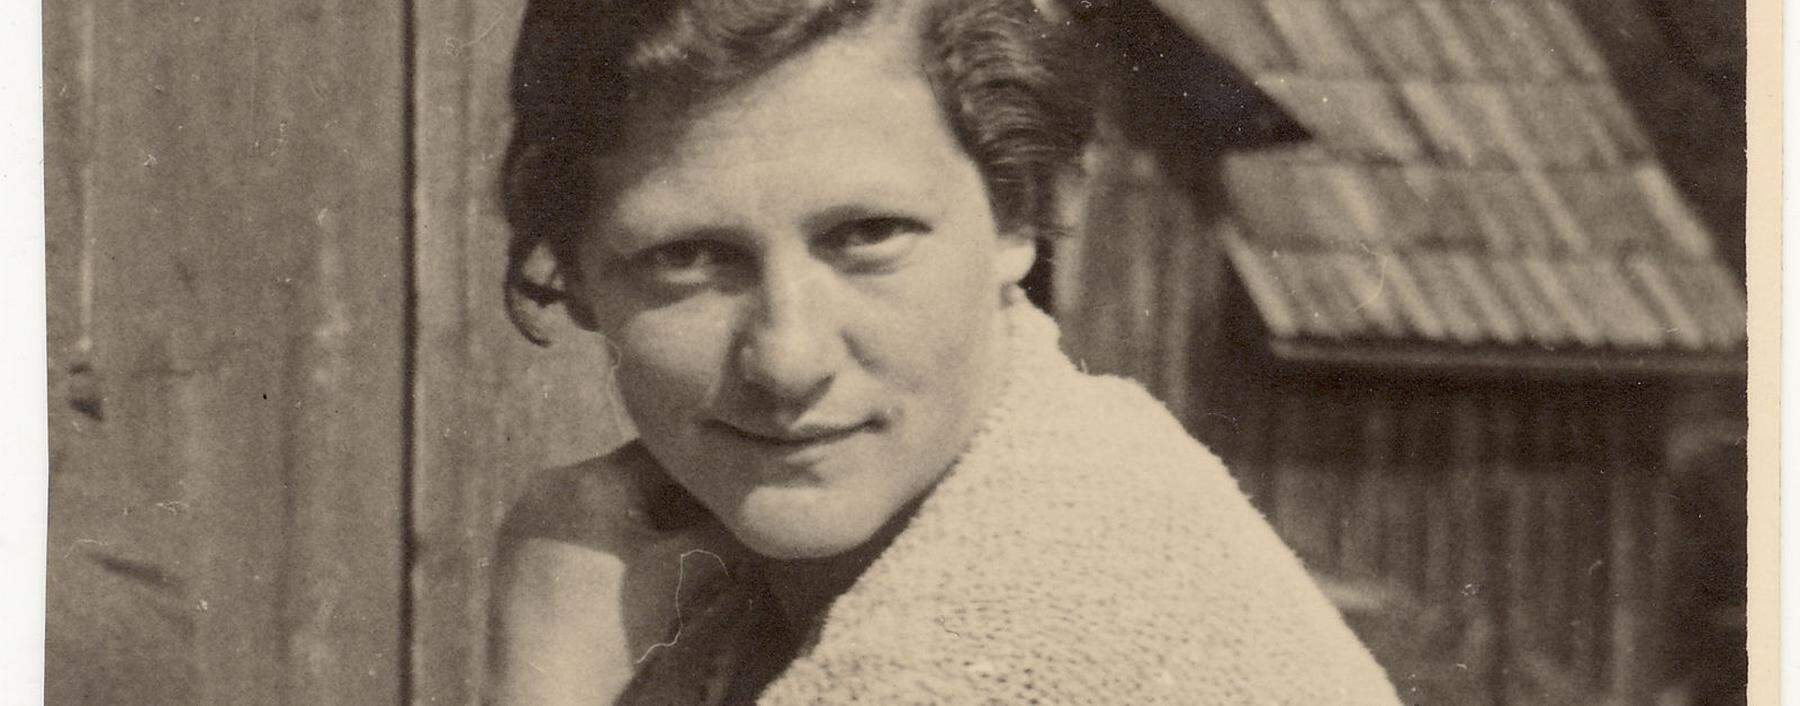 1937. Marie Jahoda erhielt die Auflage, das Land zu verlassen. Am 26. Jänner jährt sich ihr Geburtstag zum 115. Mal.